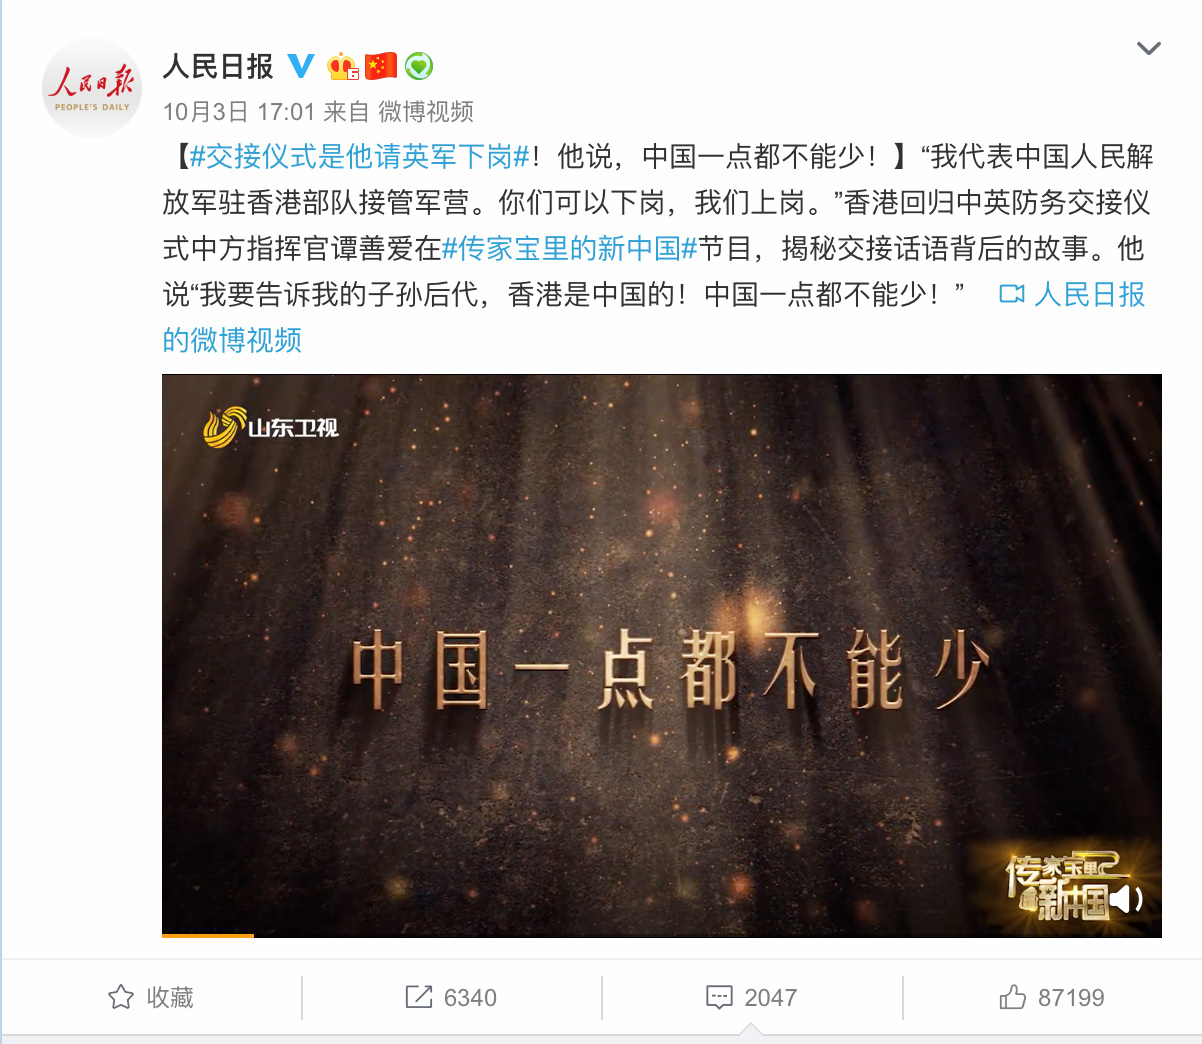 《传家宝里的新中国》热播 短视频传播过亿次